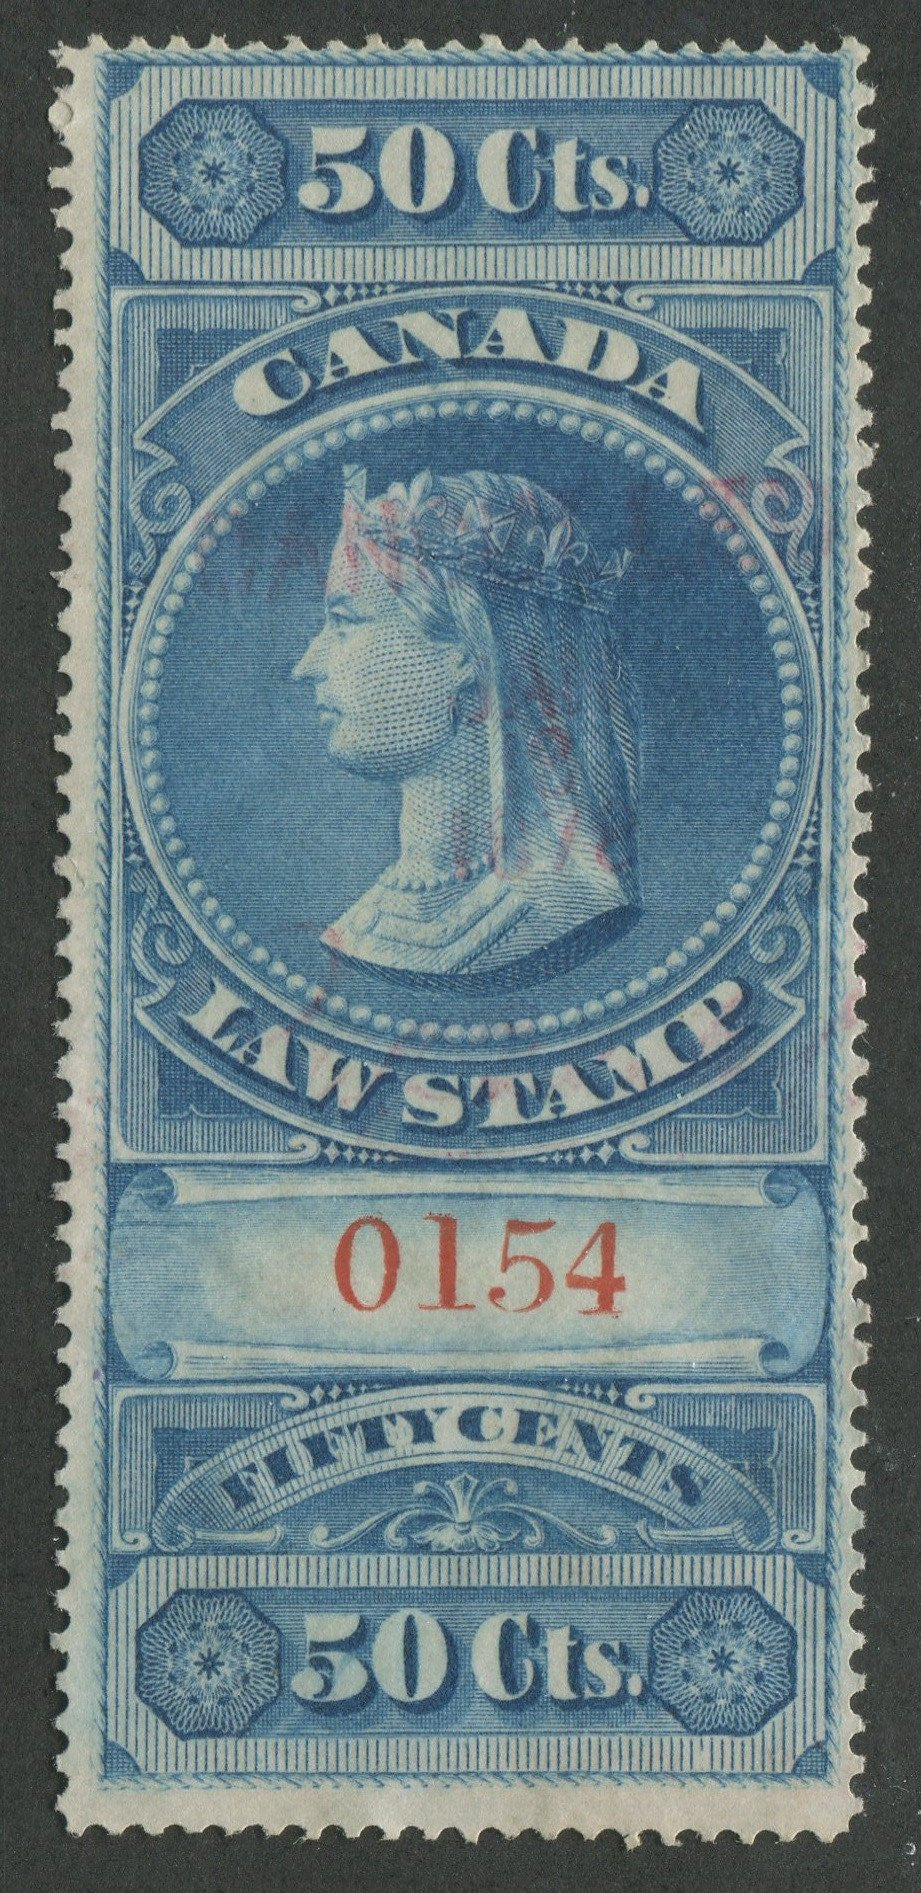 0004SC1707 - FSC4 - Used - Deveney Stamps Ltd. Canadian Stamps